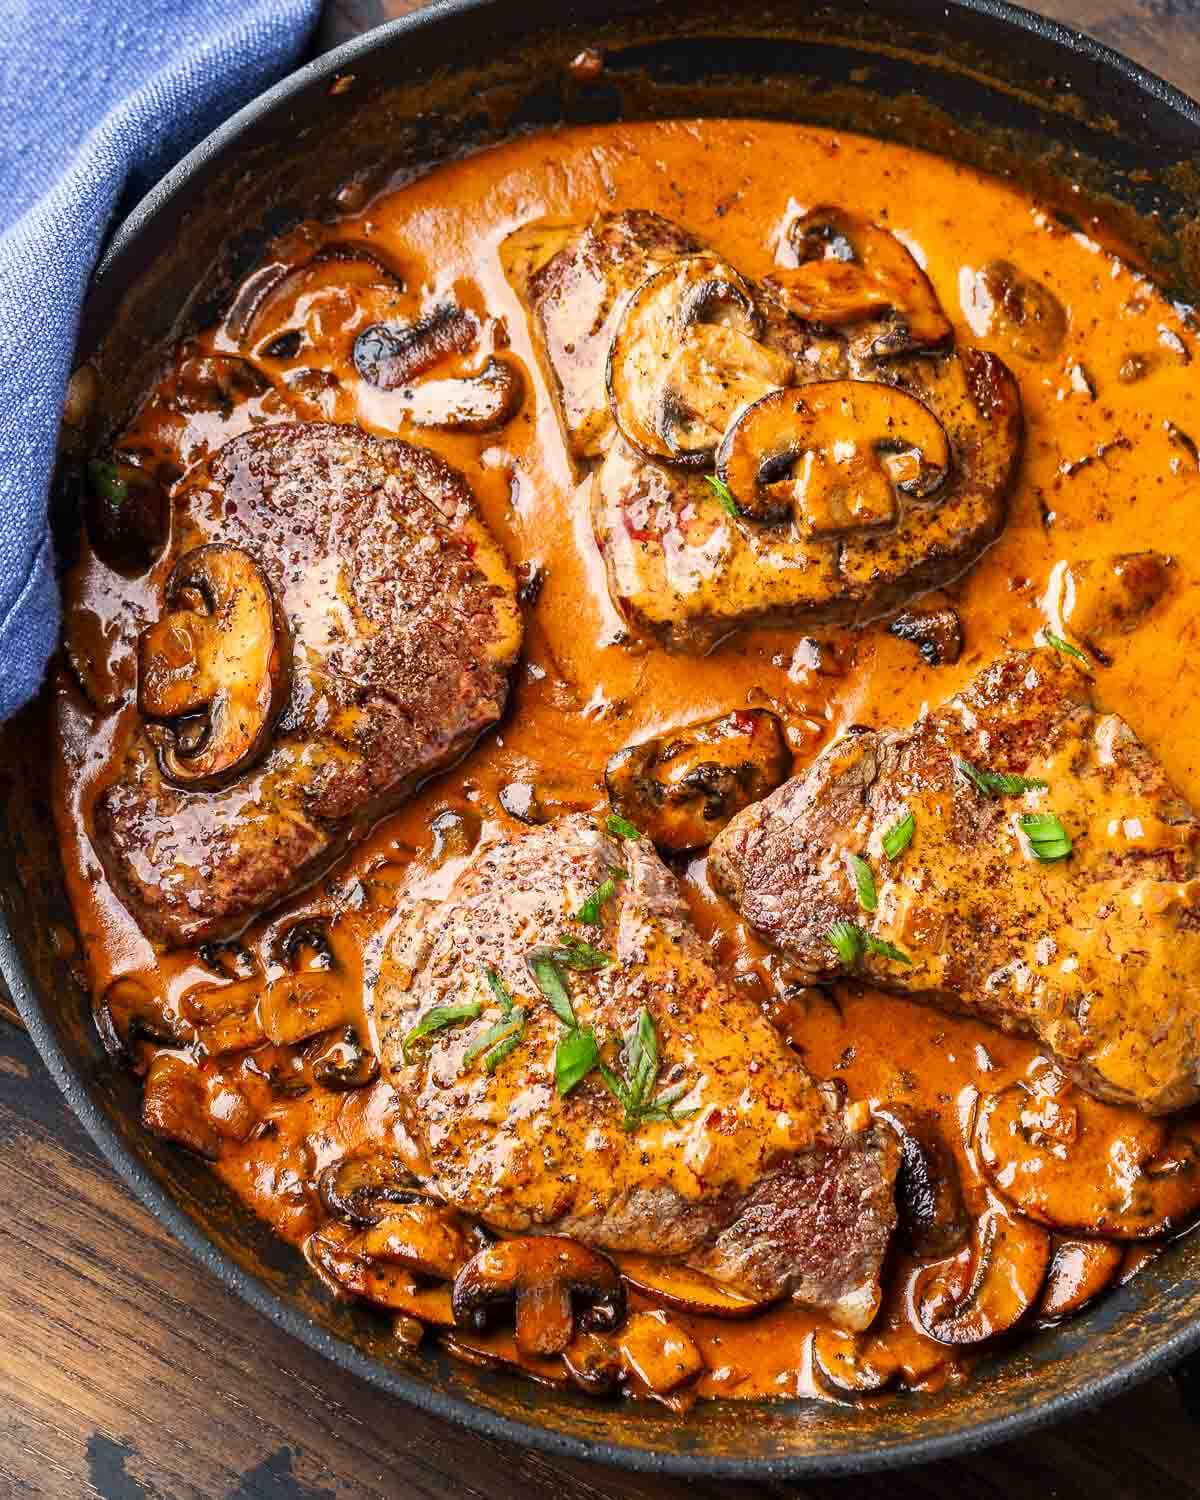 Black pan with Steak Diane in creamy mushroom sauce.